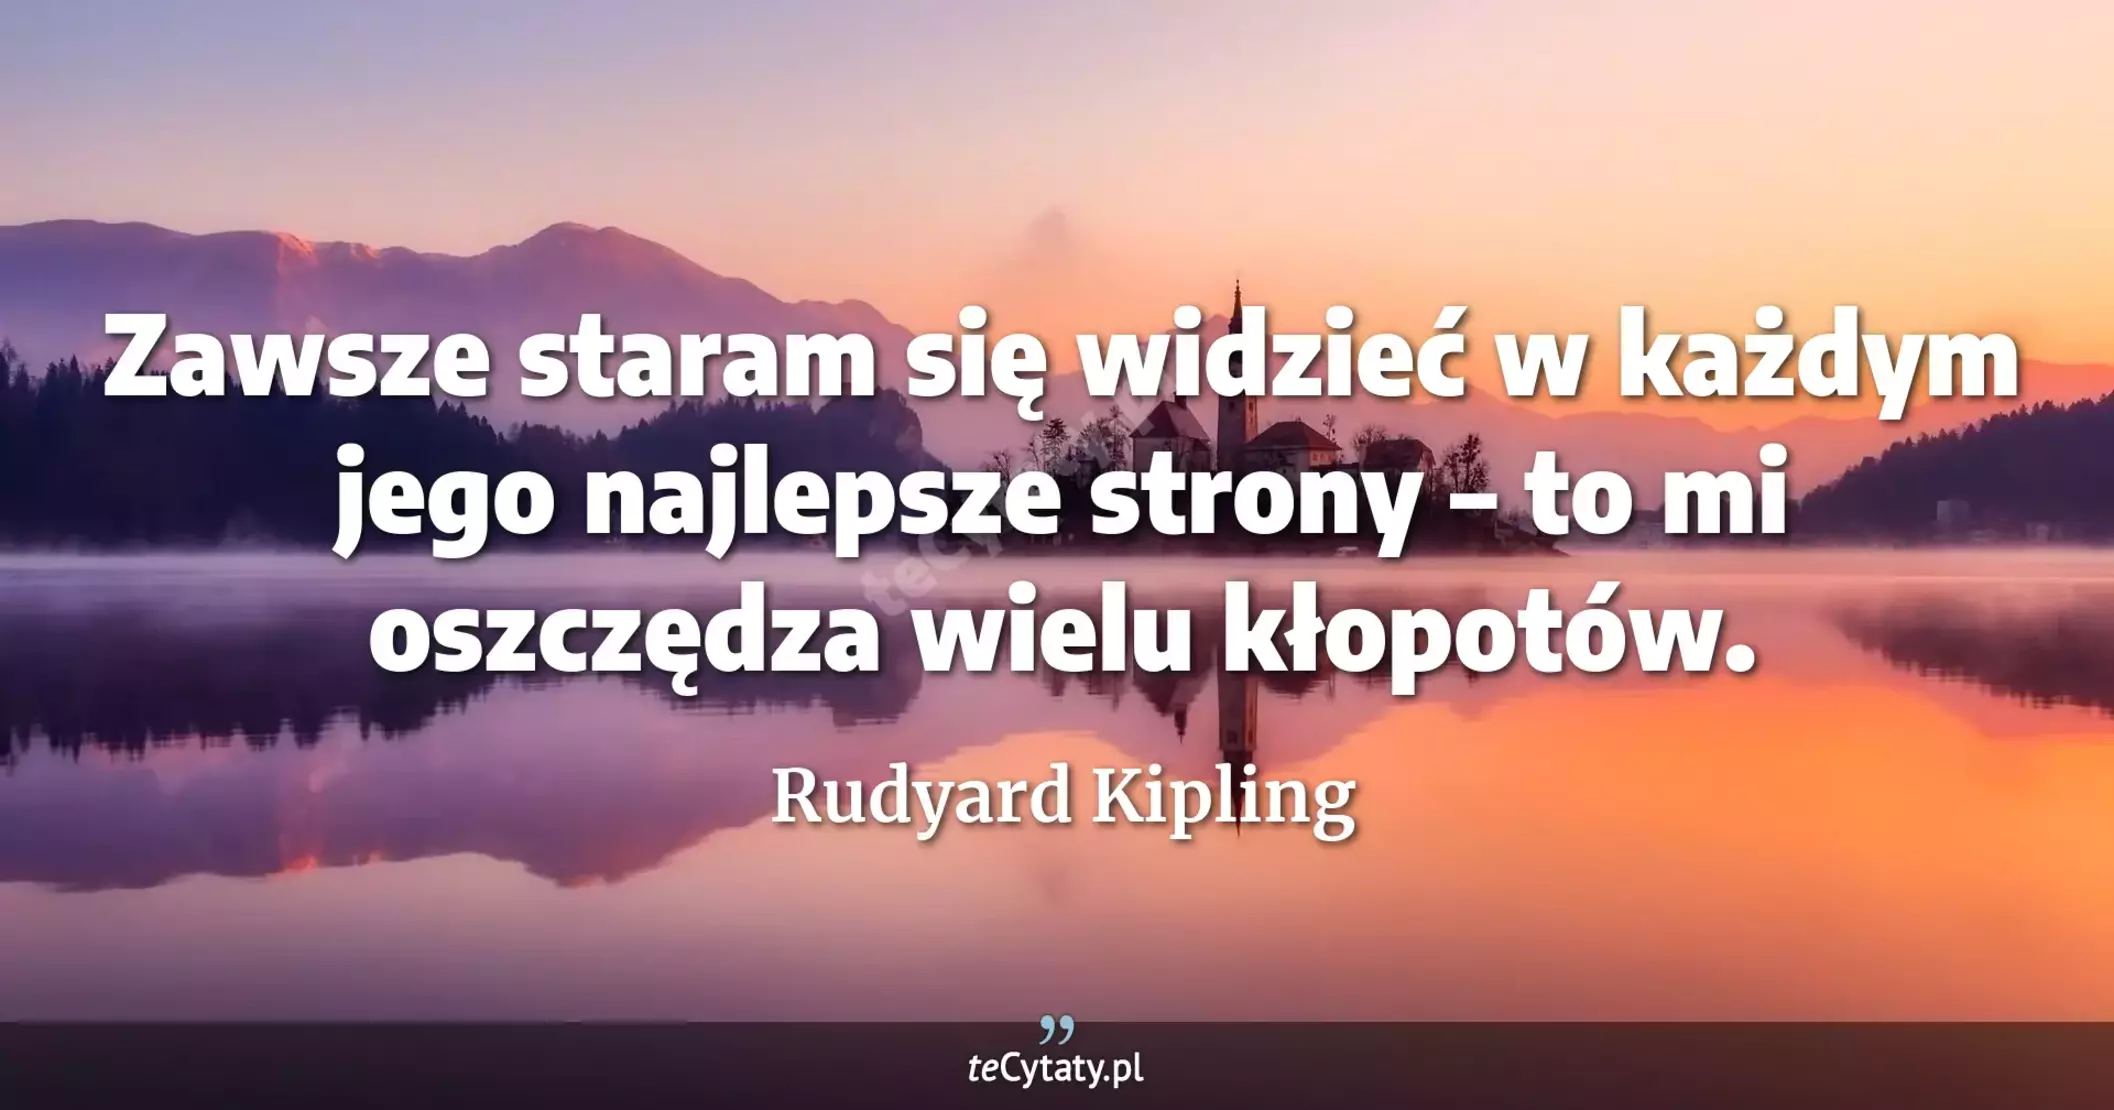 Zawsze staram się widzieć w każdym jego najlepsze strony – to mi oszczędza wielu kłopotów. - Rudyard Kipling